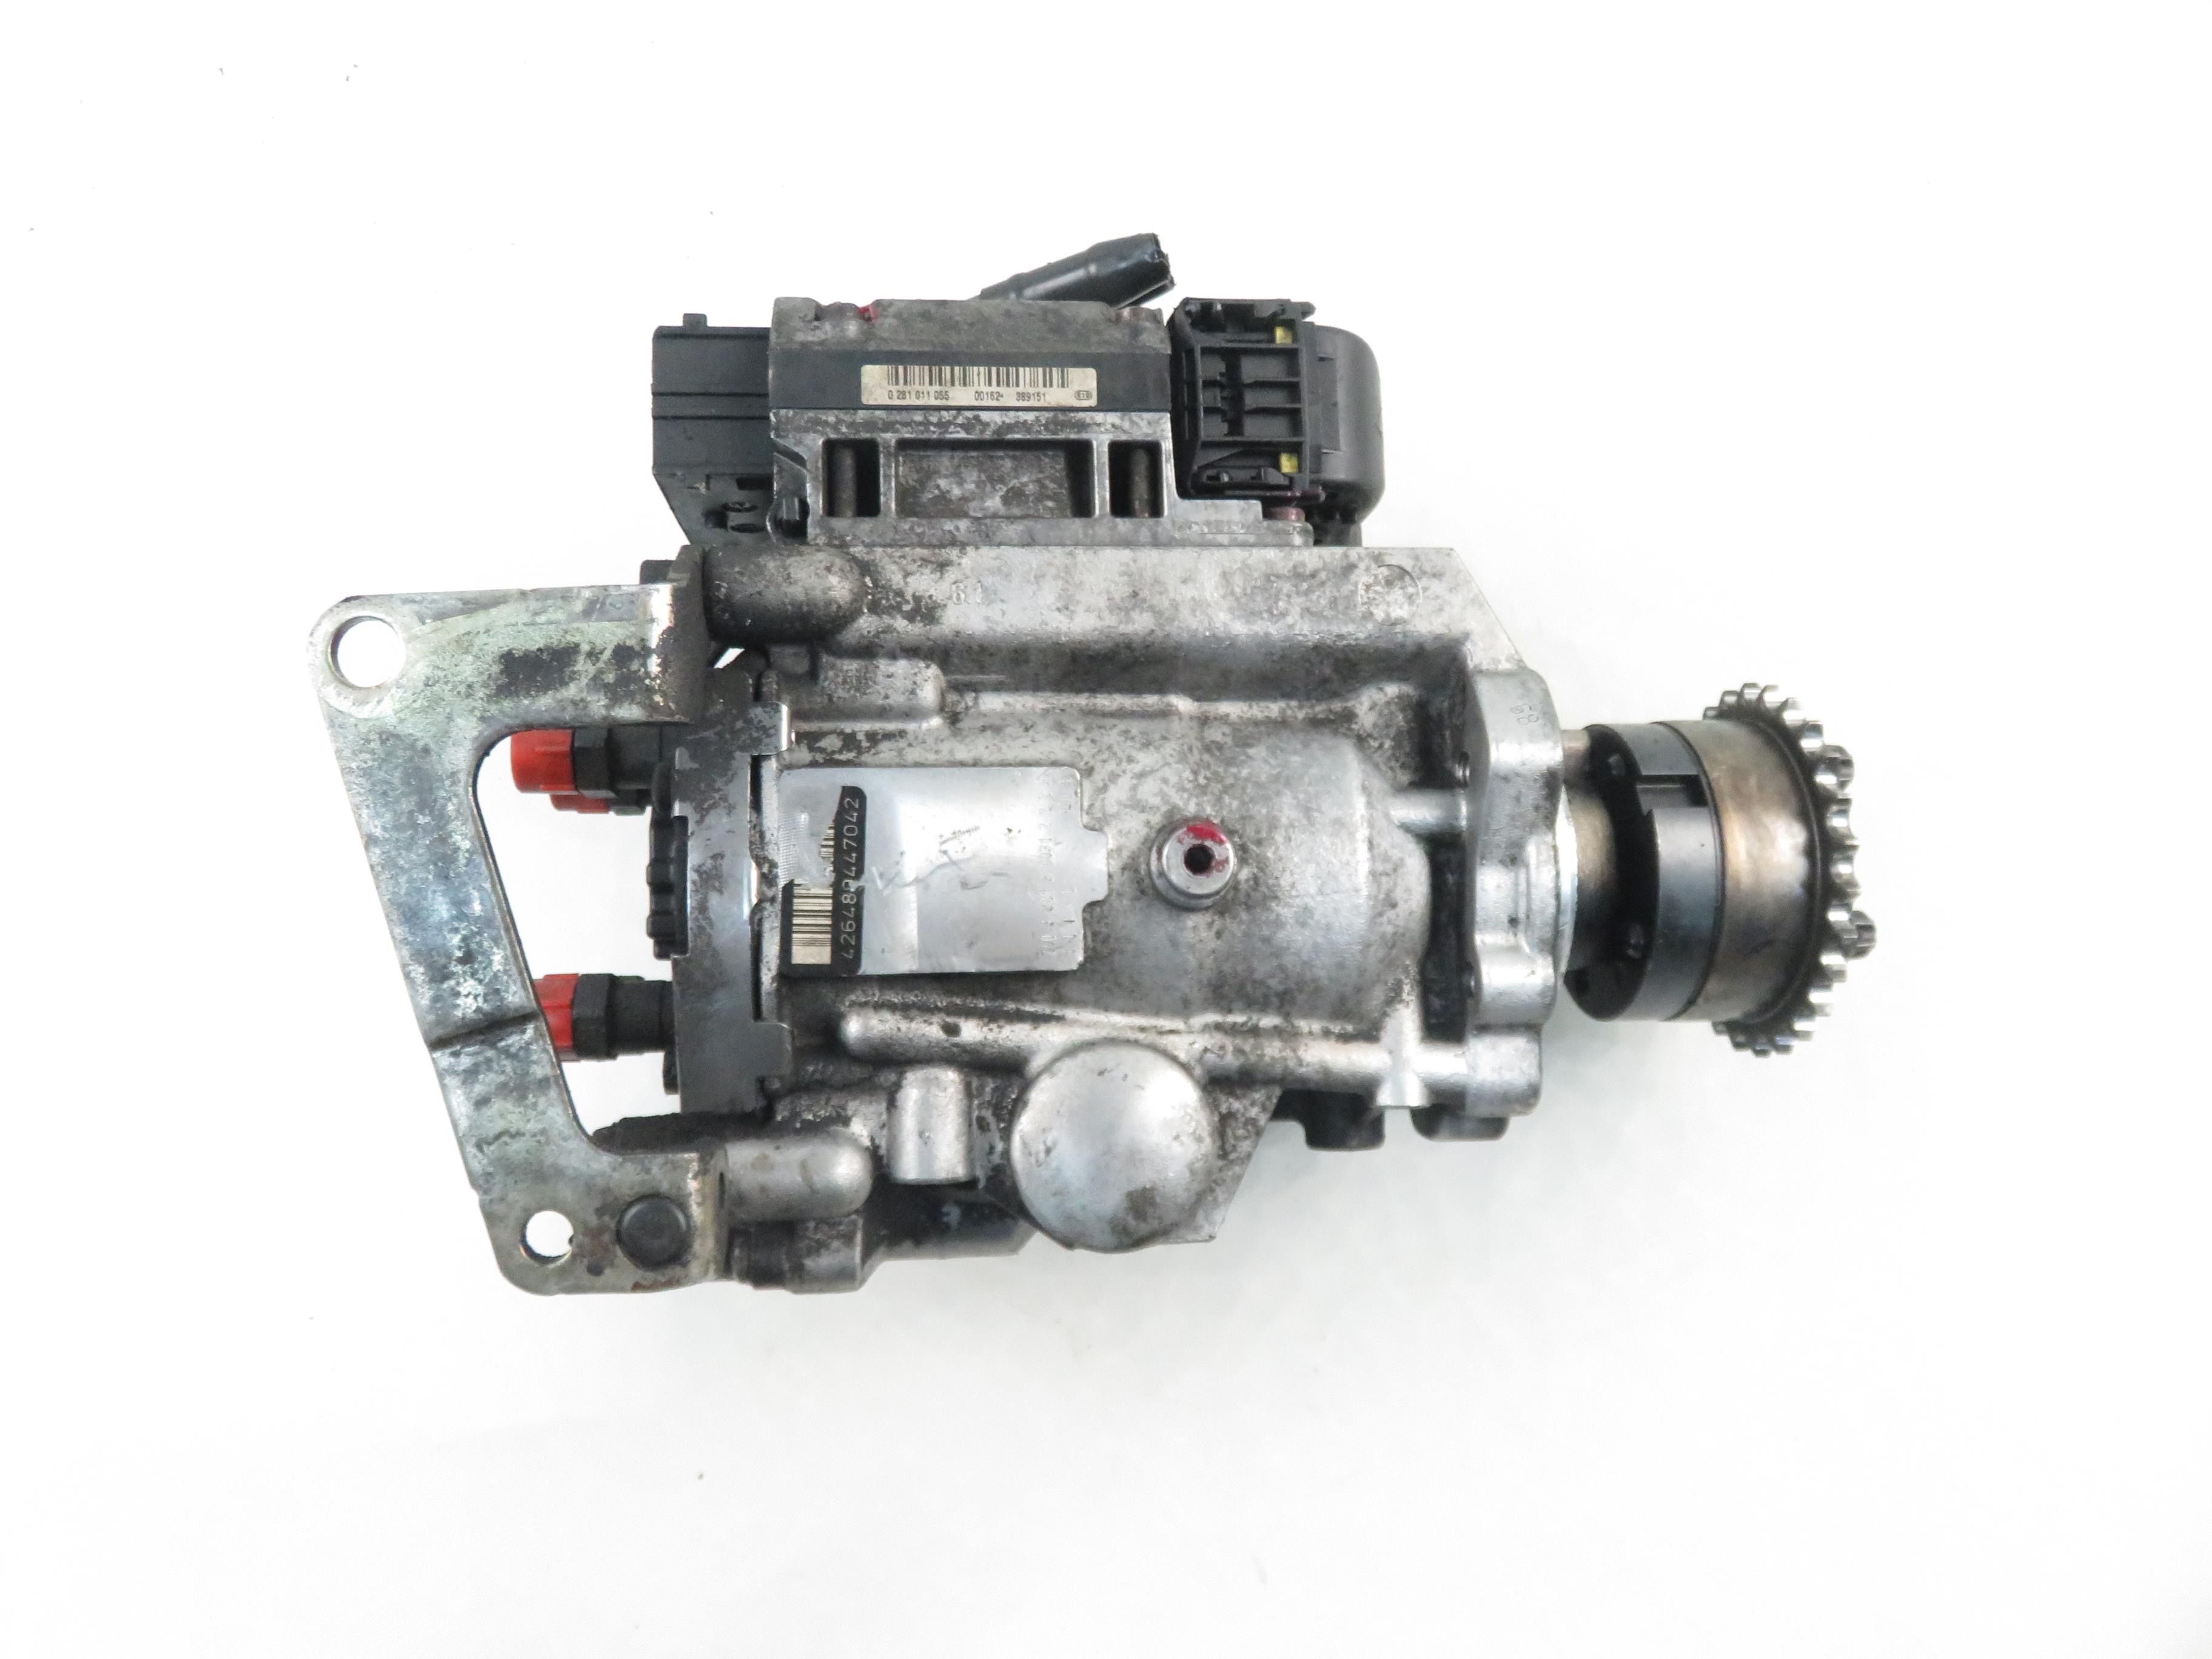 OPEL Vectra C (2002-2005) High Pressure Fuel Pump 0470504214, 55350002 22661100